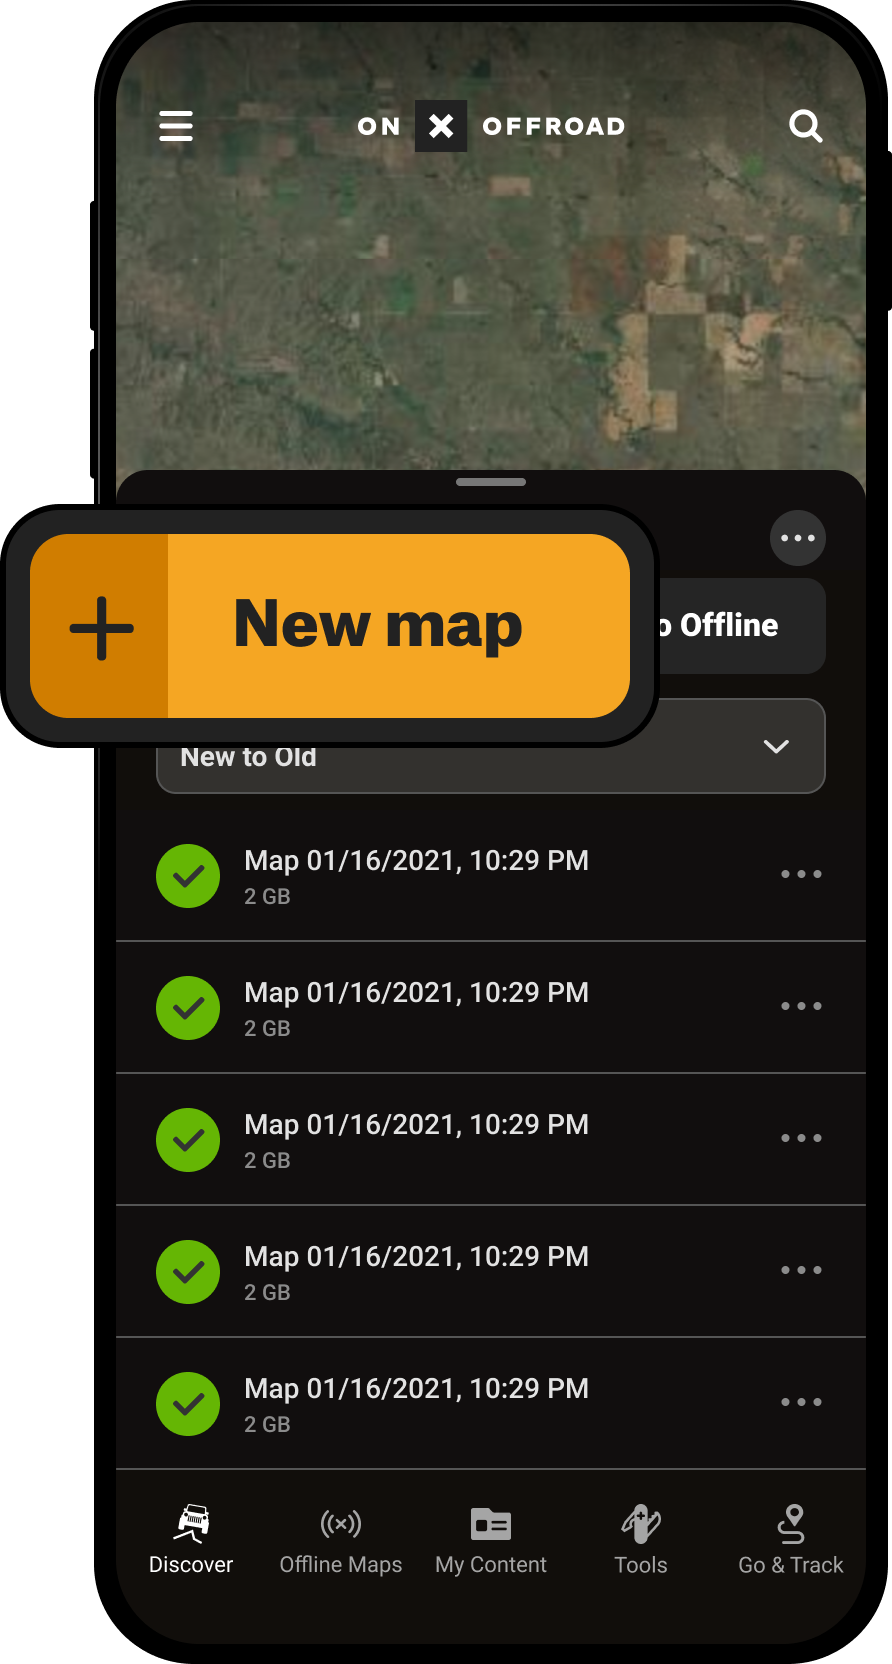 New Map Button Offline Maps Menu Offroad App.png